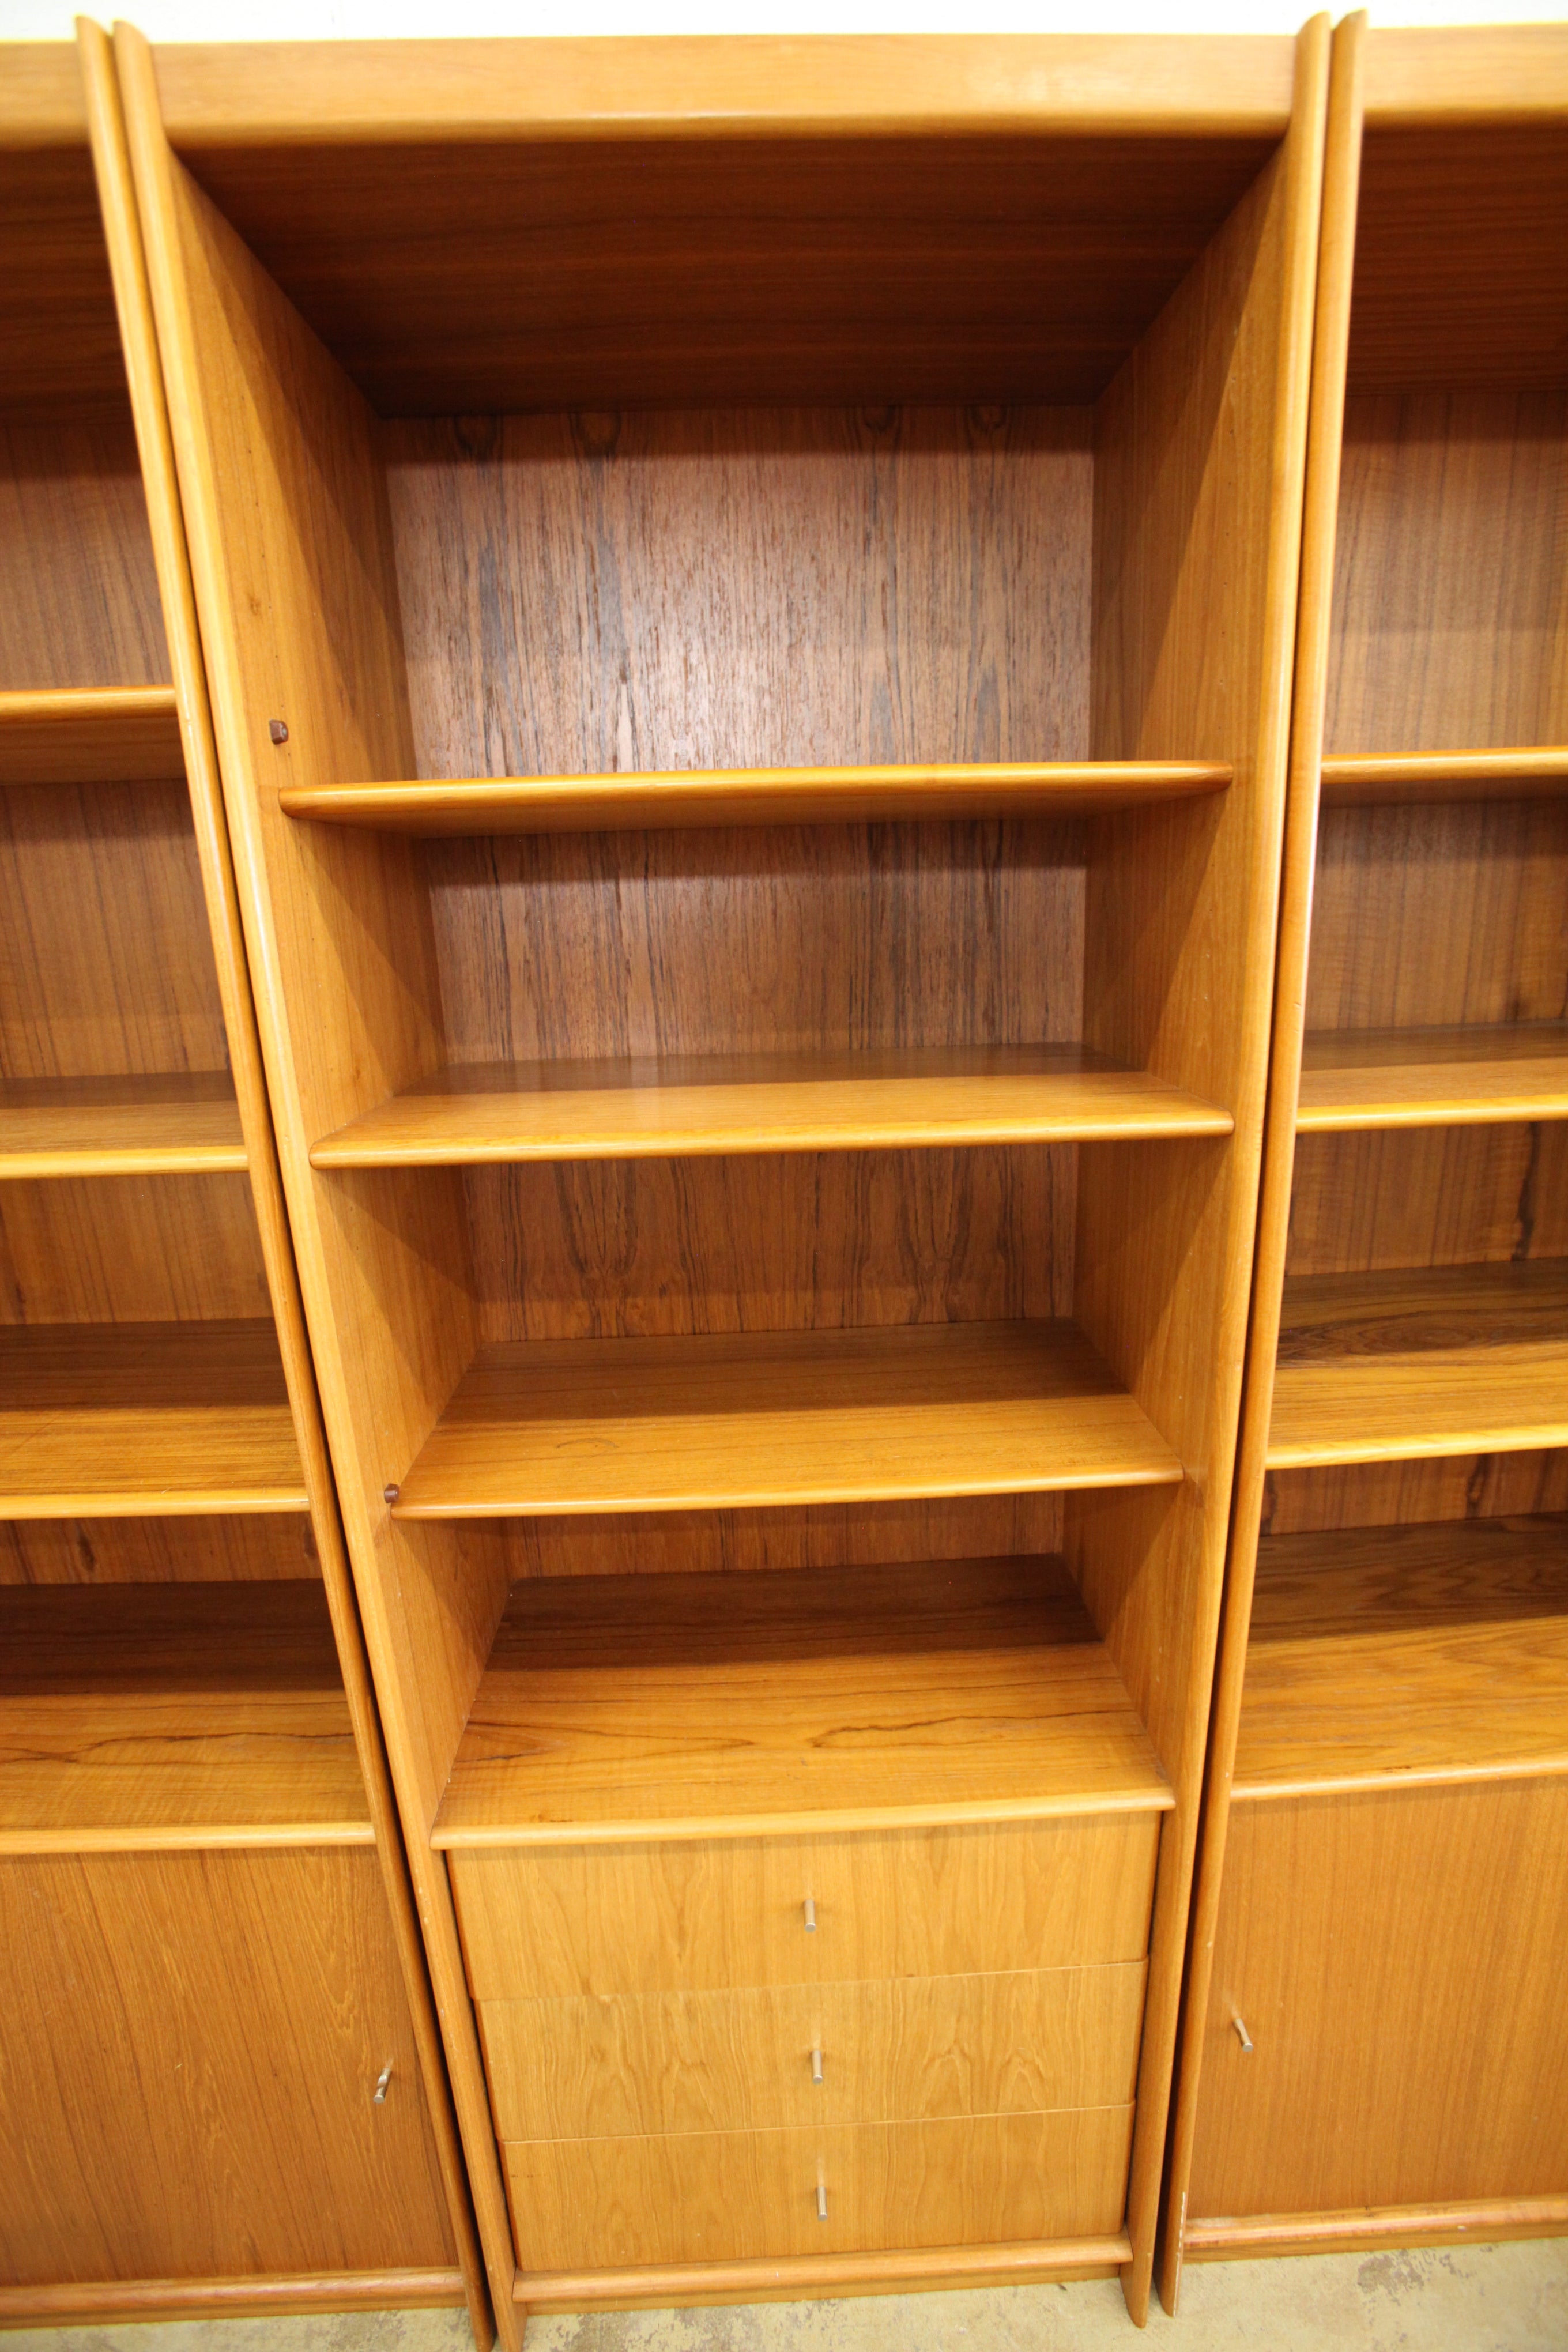 Vintage Tall Teak Bookshelf w/ Lower Drawers (27.5"W x 15.75"D x 78.25"H)